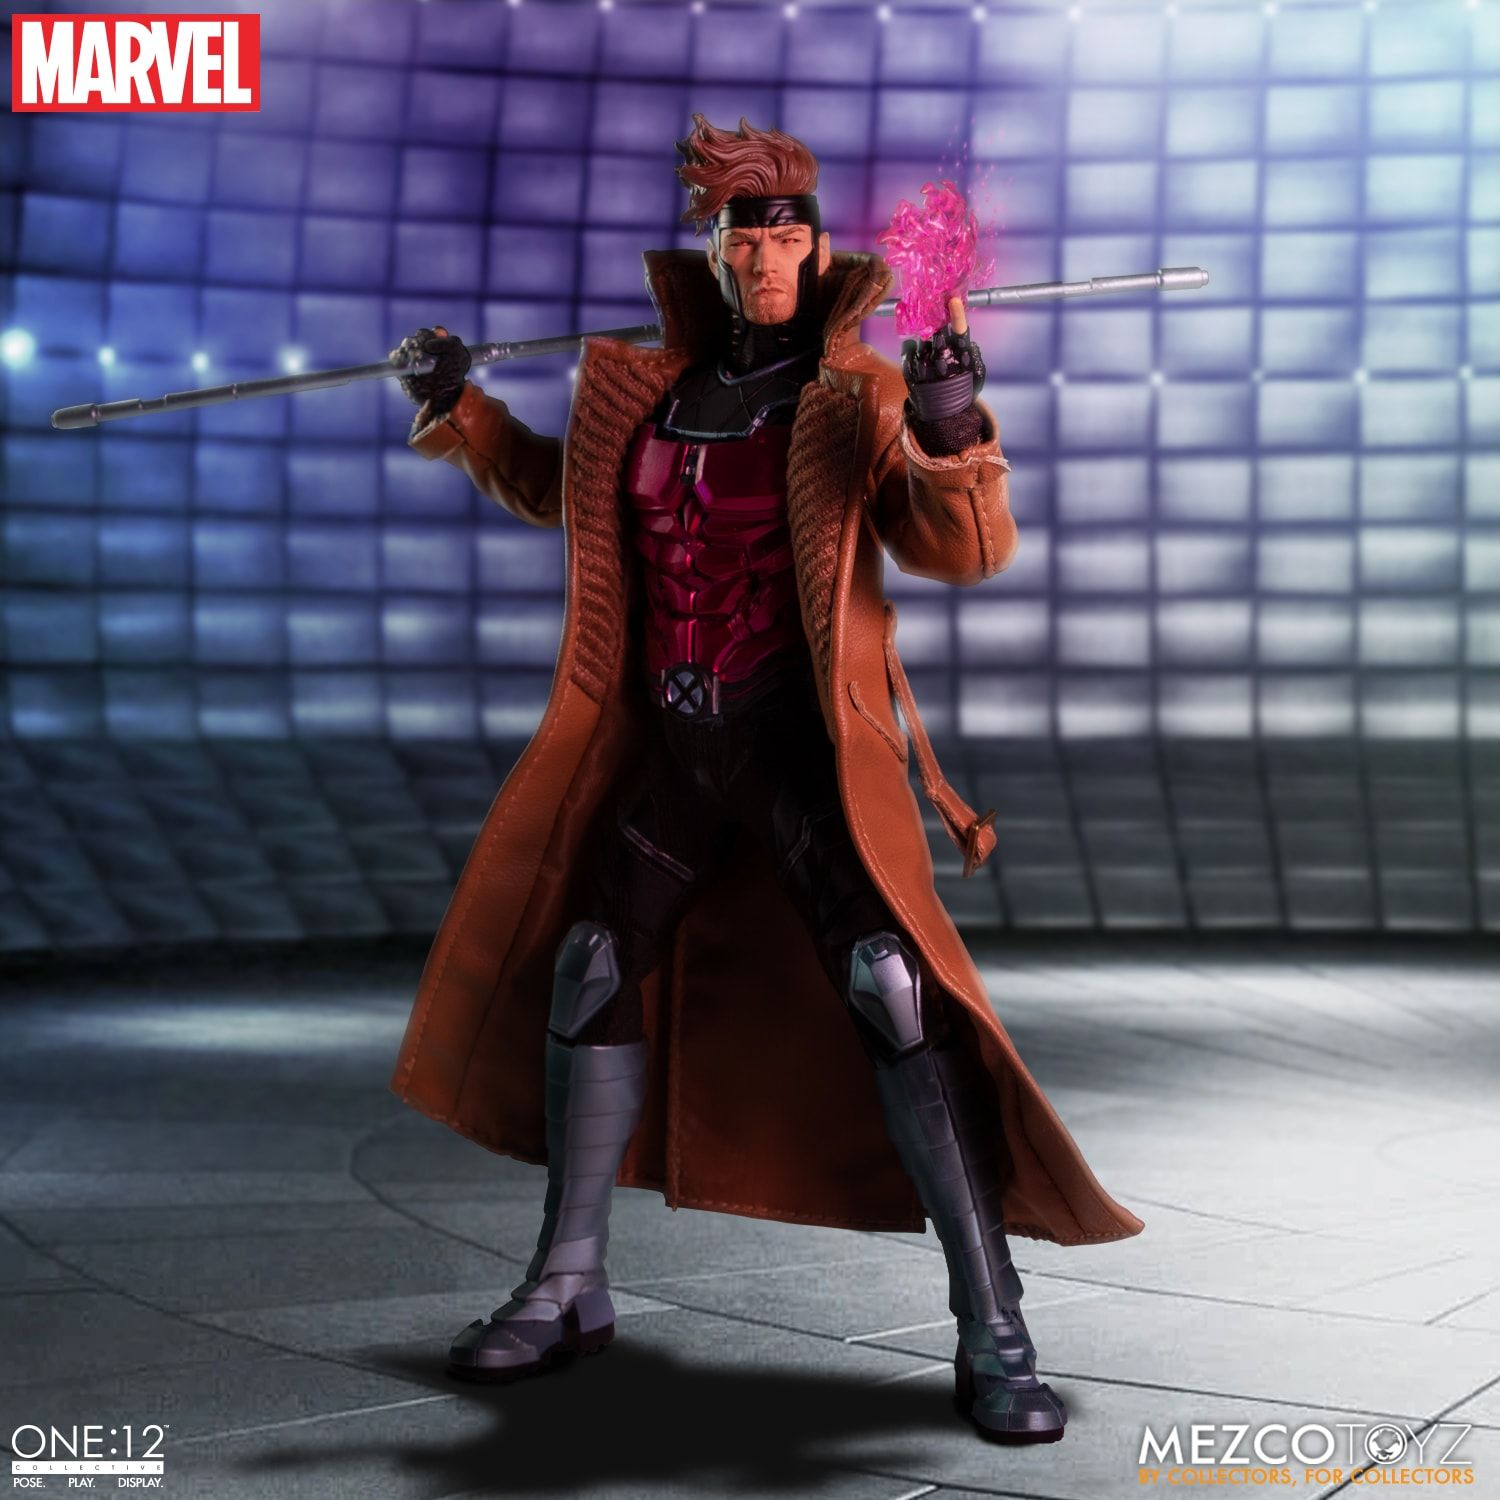 Mezco - One:12 Collcective - Marvel's X-Men - Gambit - Marvelous Toys